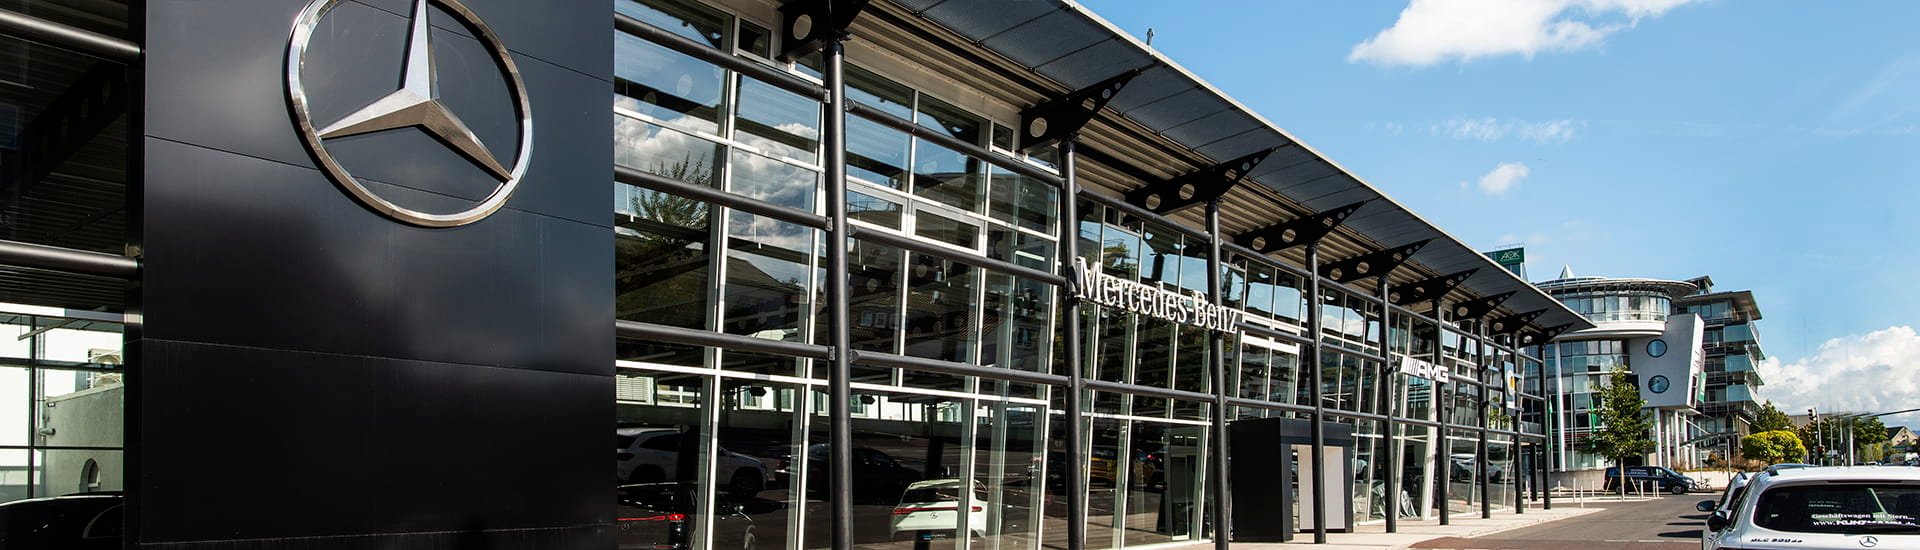 Autohaus Kunzmann Hauptbetrieb in Aschaffenburg für Mercedes, smart und Volkswagen